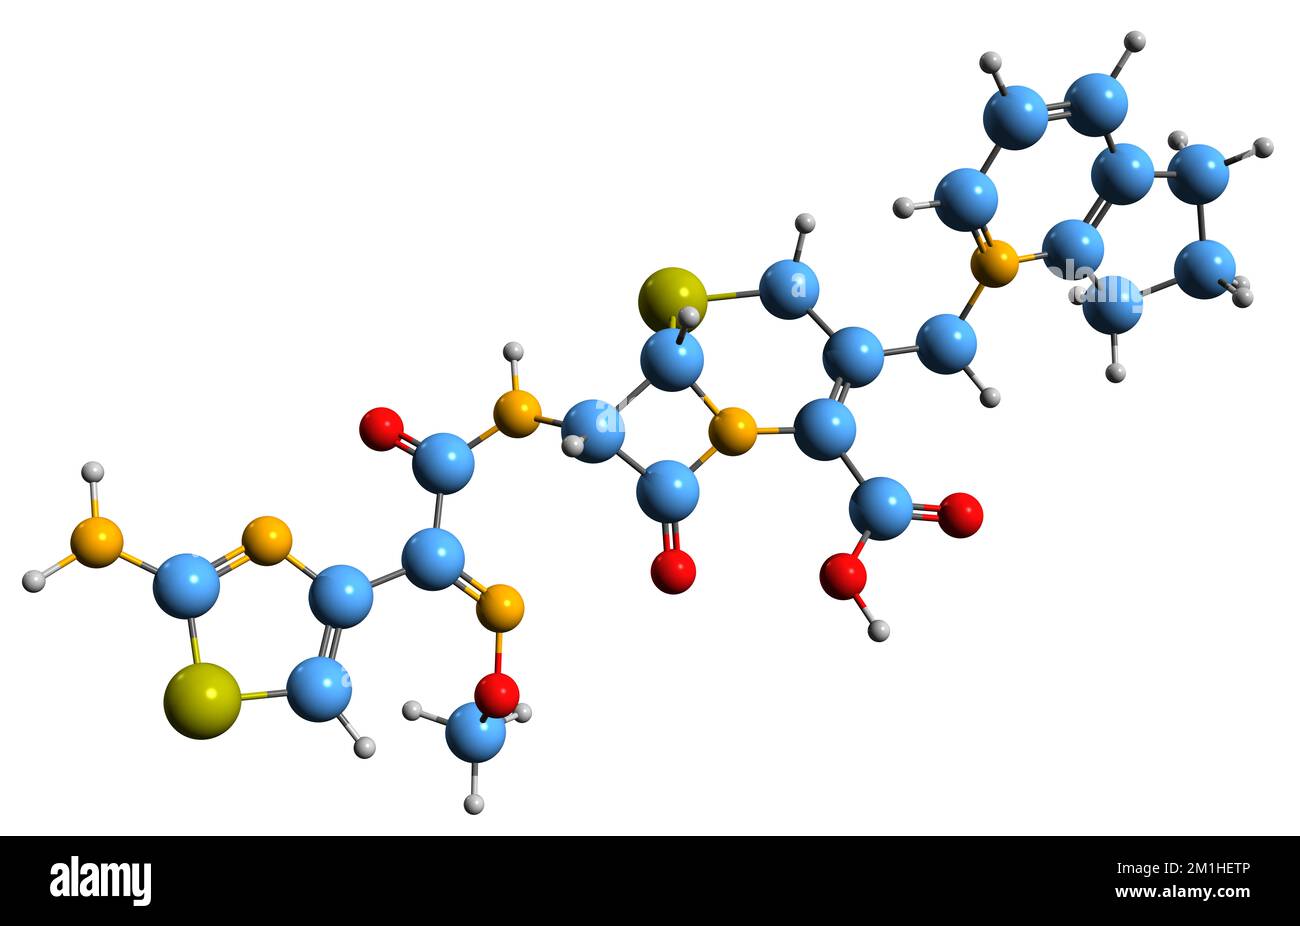 3D imagen de la fórmula esquelética de Ceppirome - estructura química molecular del antibiótico cefalosporina aislado sobre fondo blanco Foto de stock